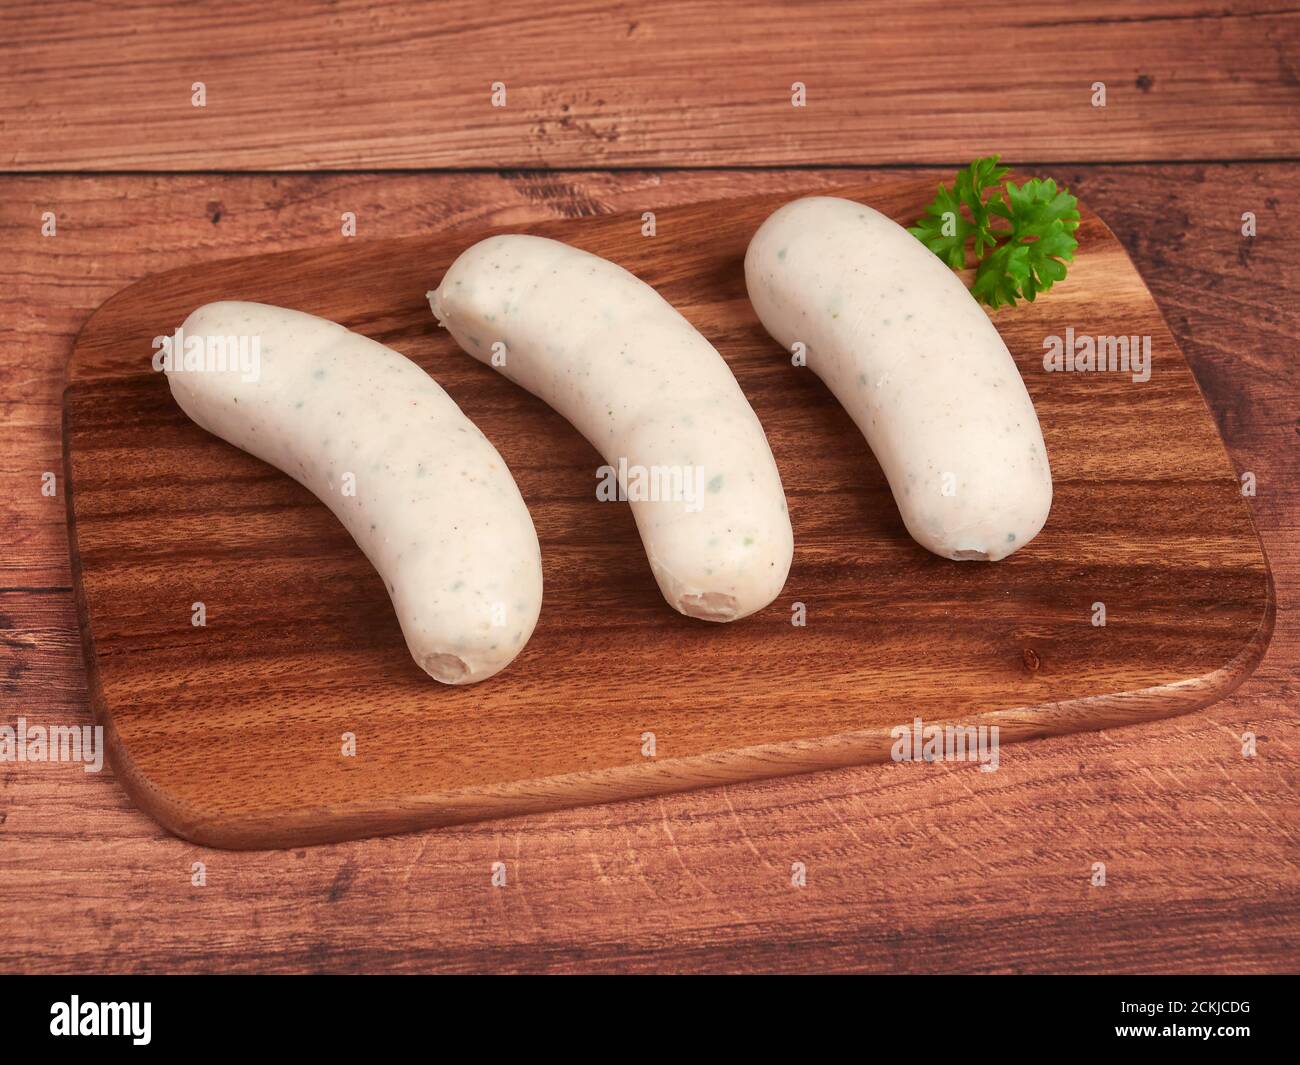 Saucisses traditionnelles blanches bavaroises (weisswurst) sur une planche de bois Banque D'Images